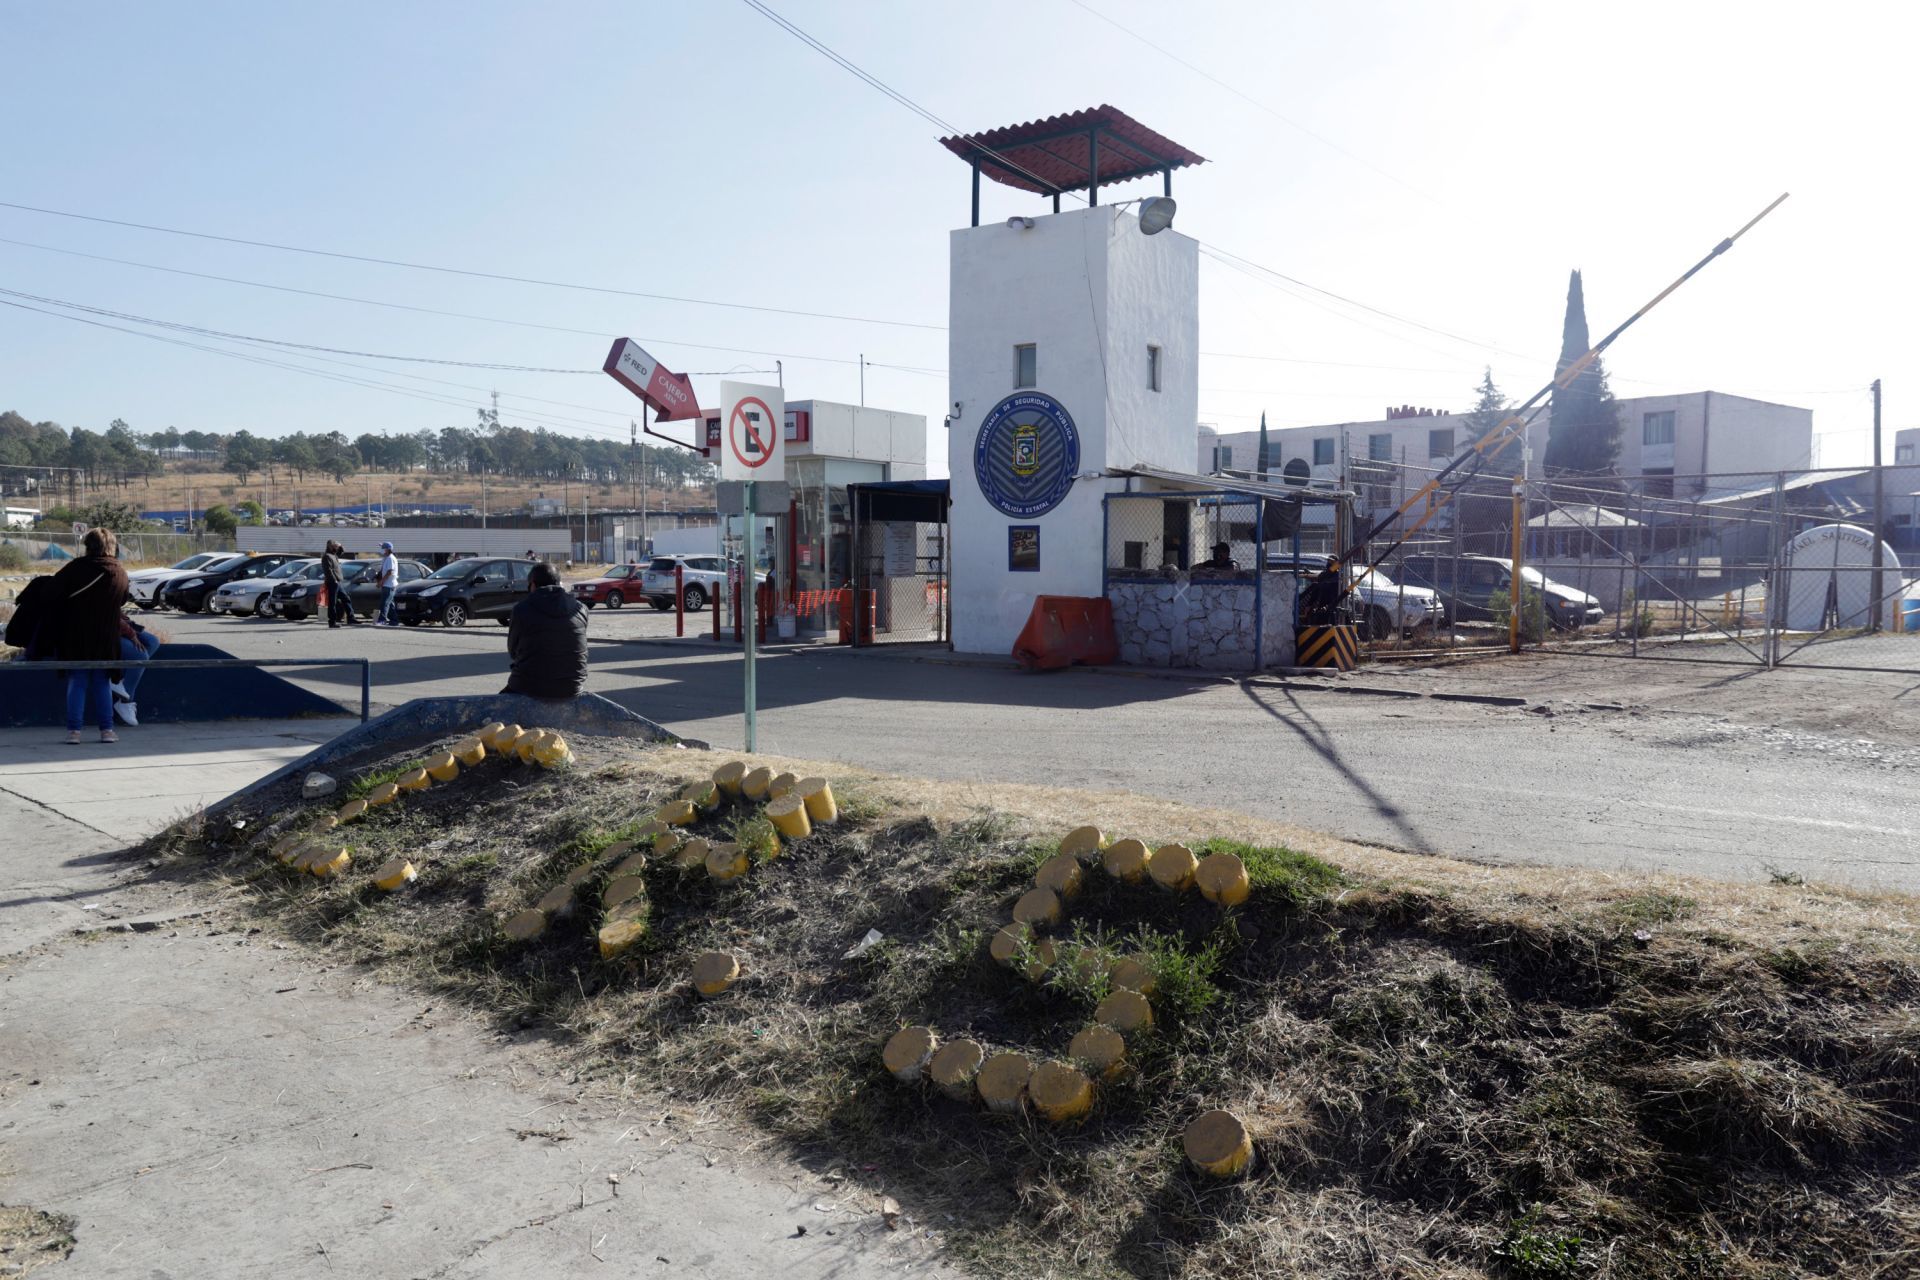 Dos reos mueren intoxicados tras beber alcohol adulterado en penal de Puebla